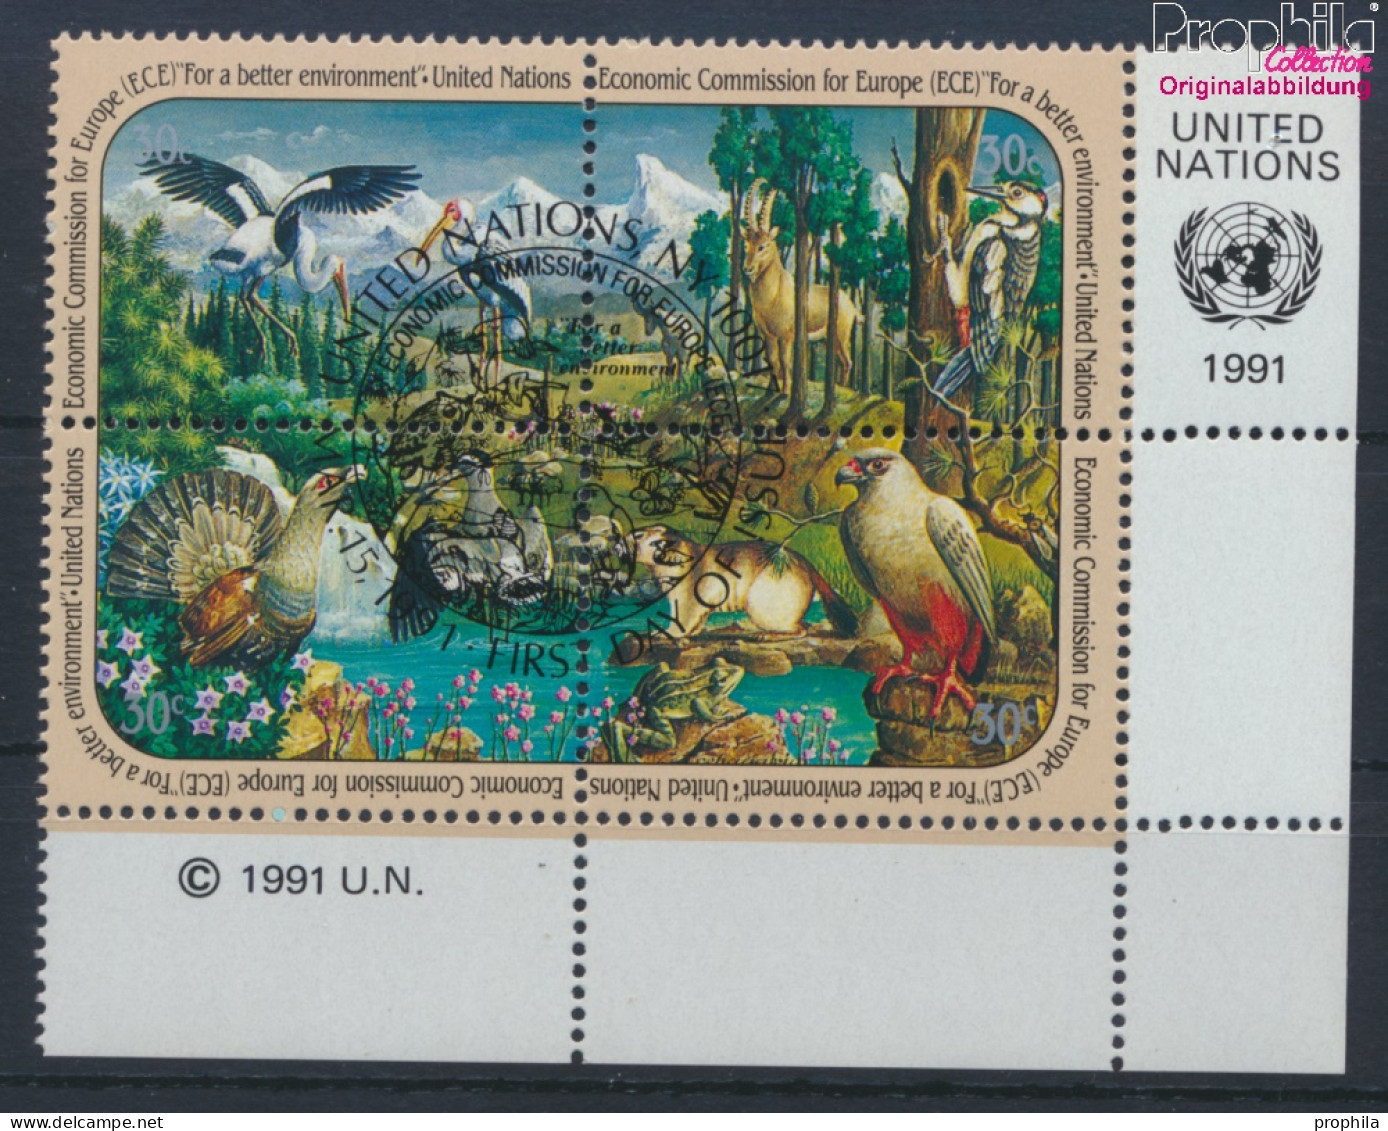 UNO - New York 608-611 Viererblock (kompl.Ausg.) Gestempelt 1991 Wirtschaft (10036410 - Used Stamps